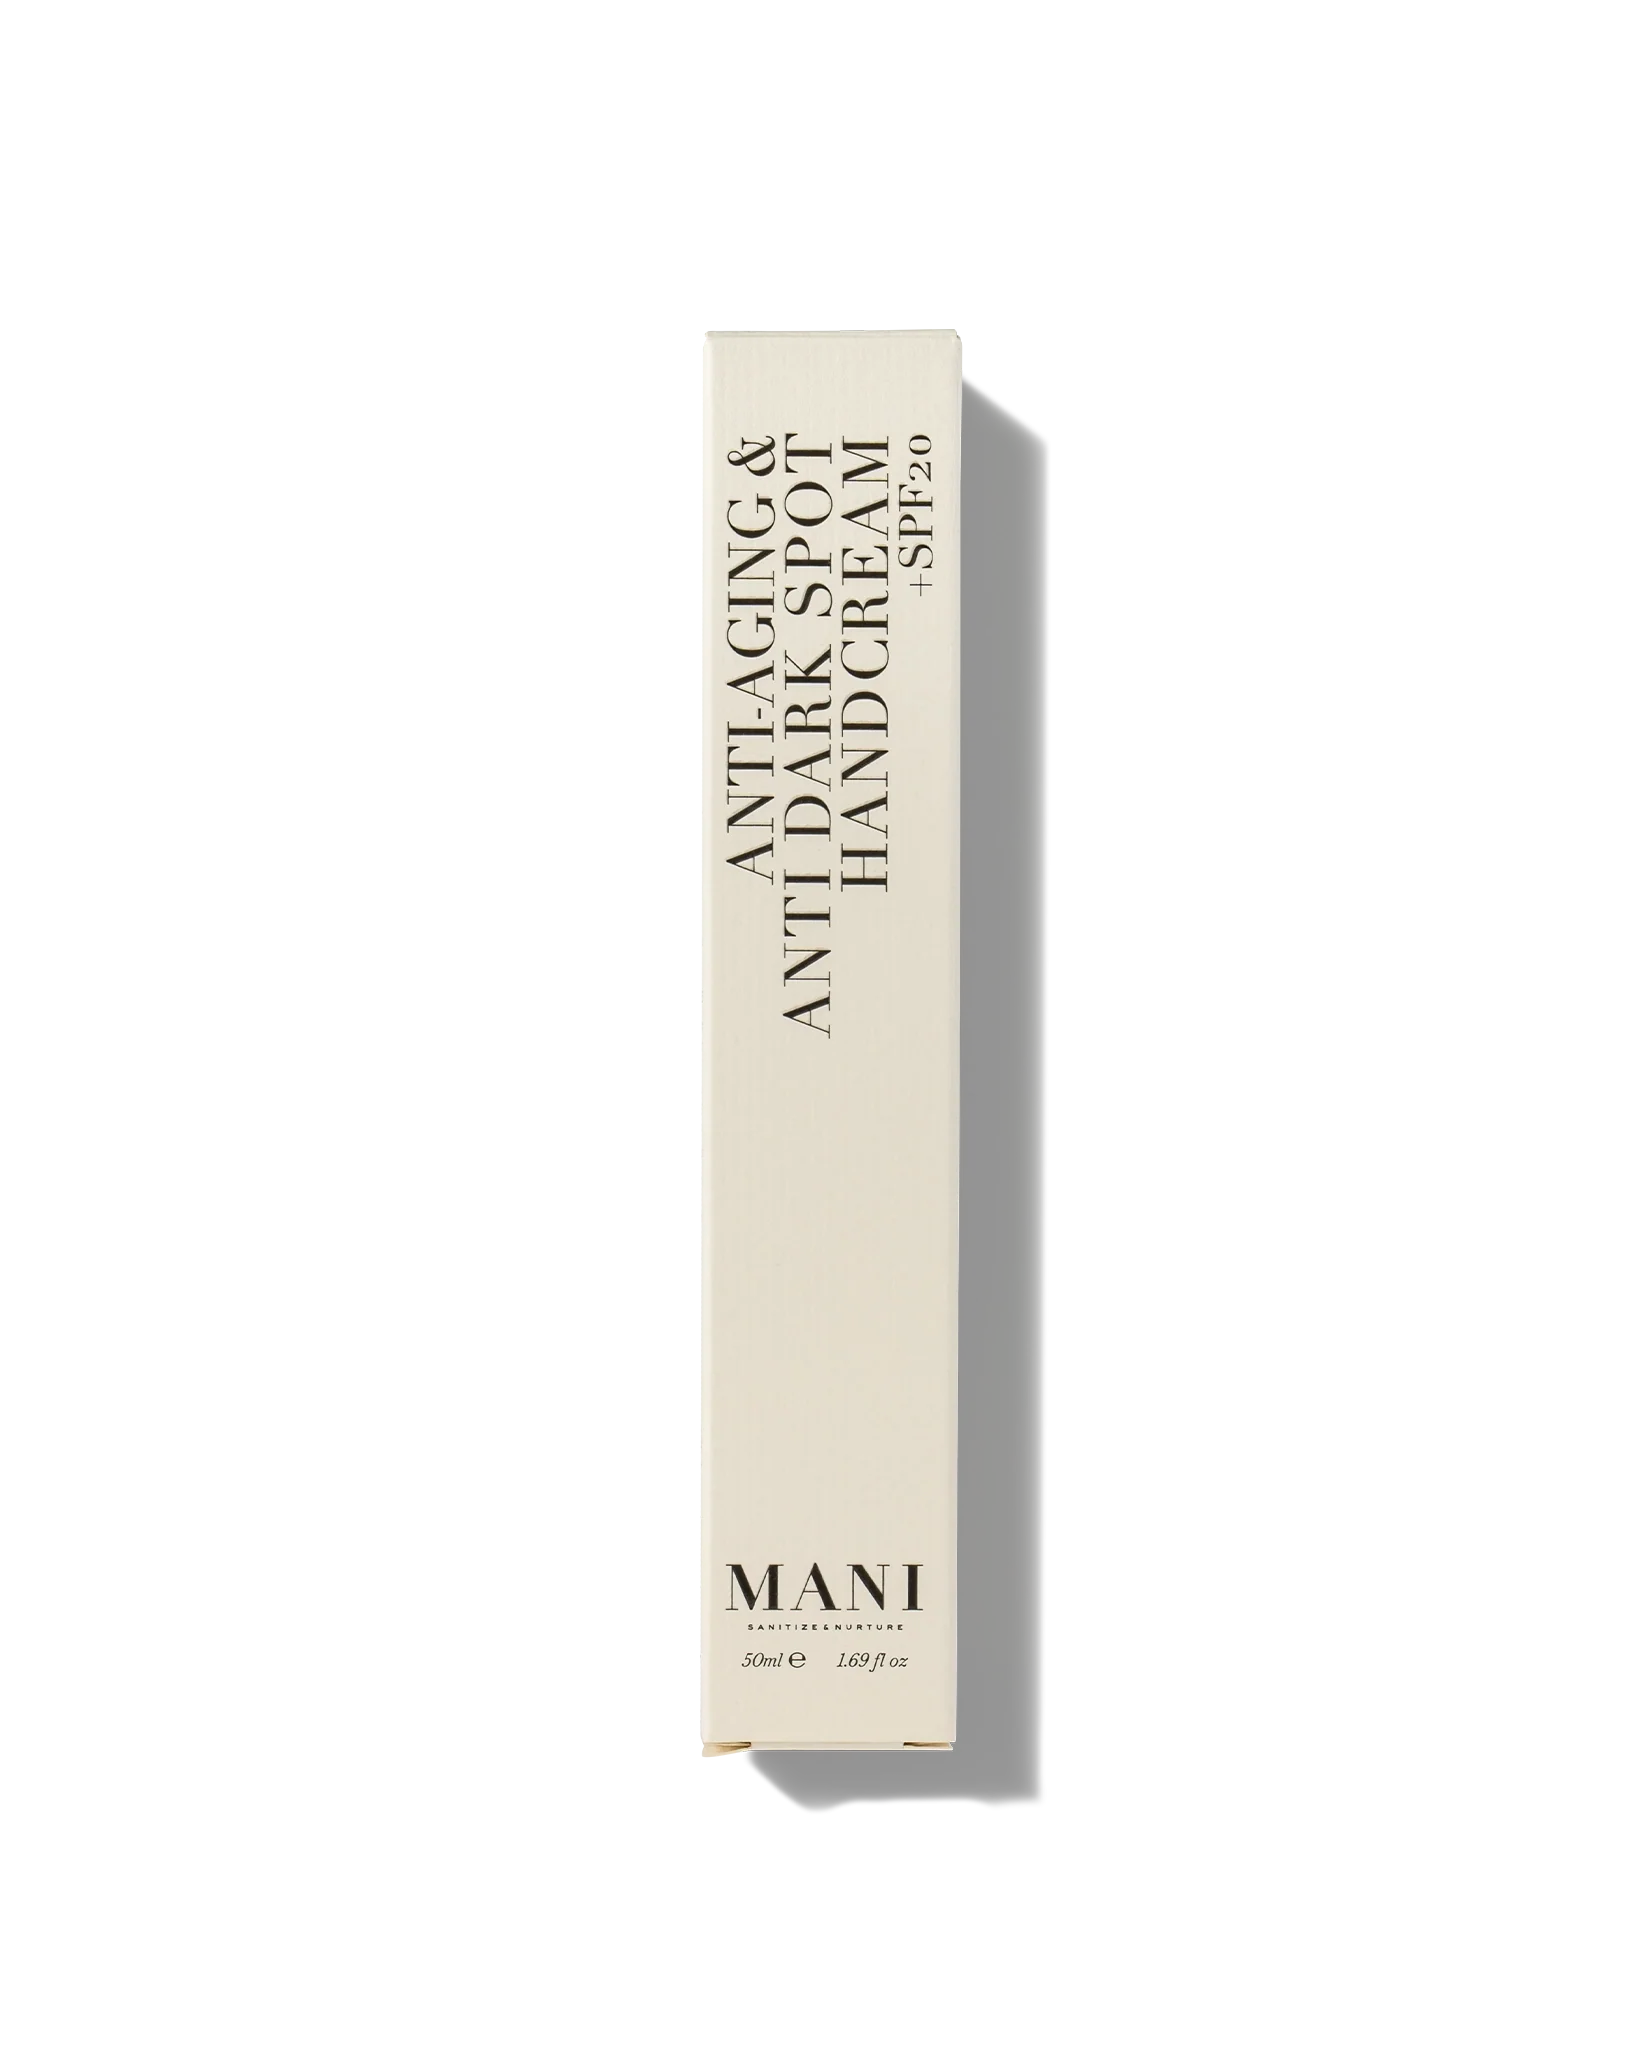 MANI | ANTI-AGING HANDCREME + SPF20